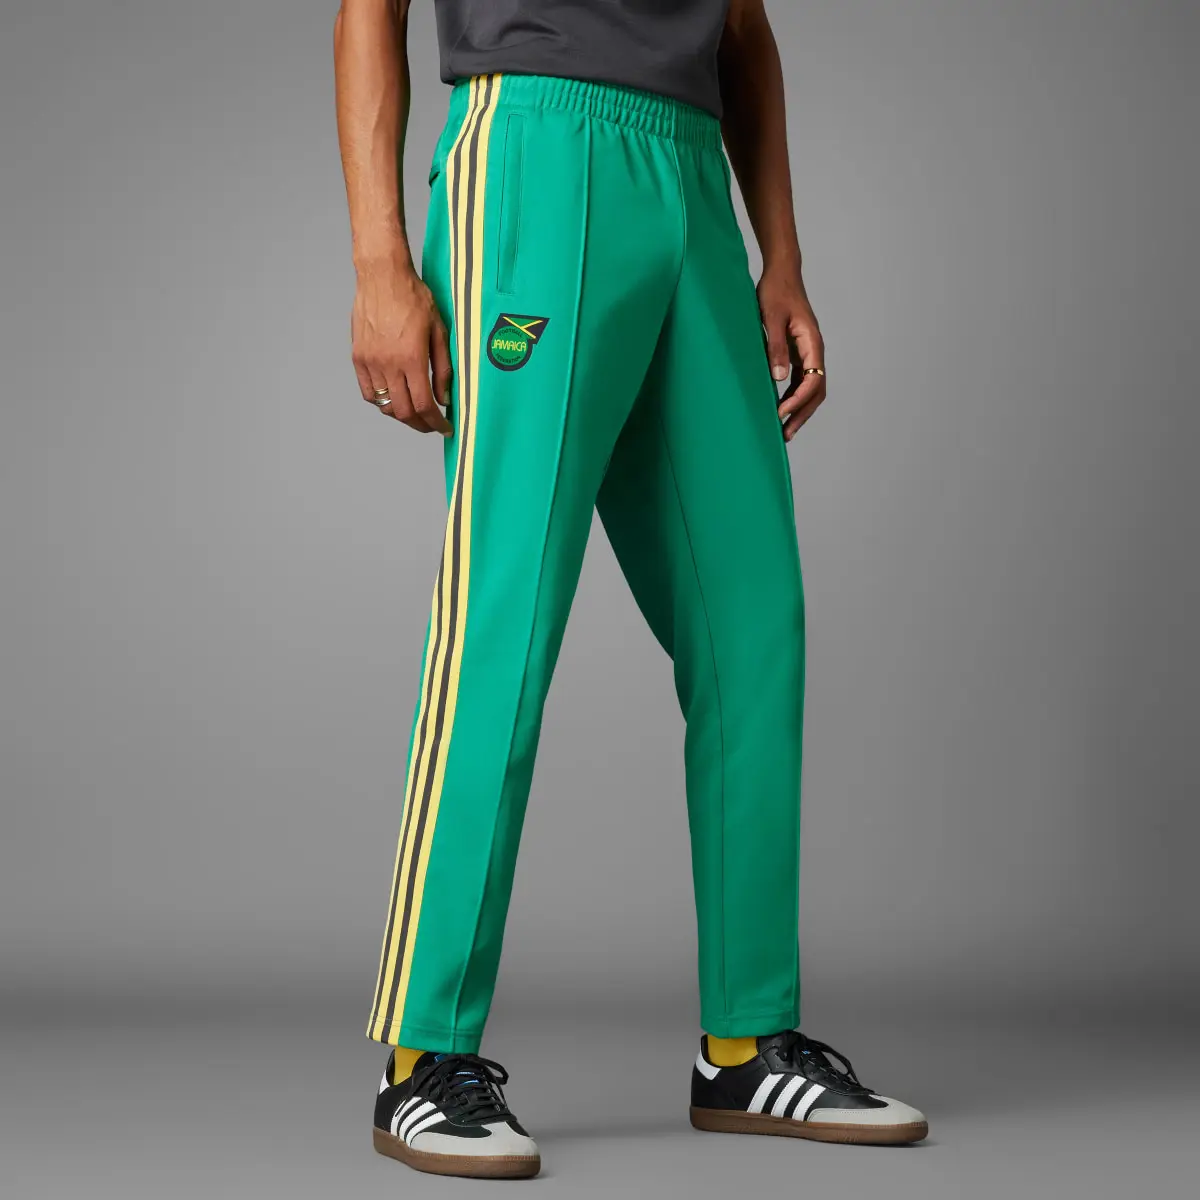 Adidas Spodnie dresowe Jamaica Beckenbauer. 1